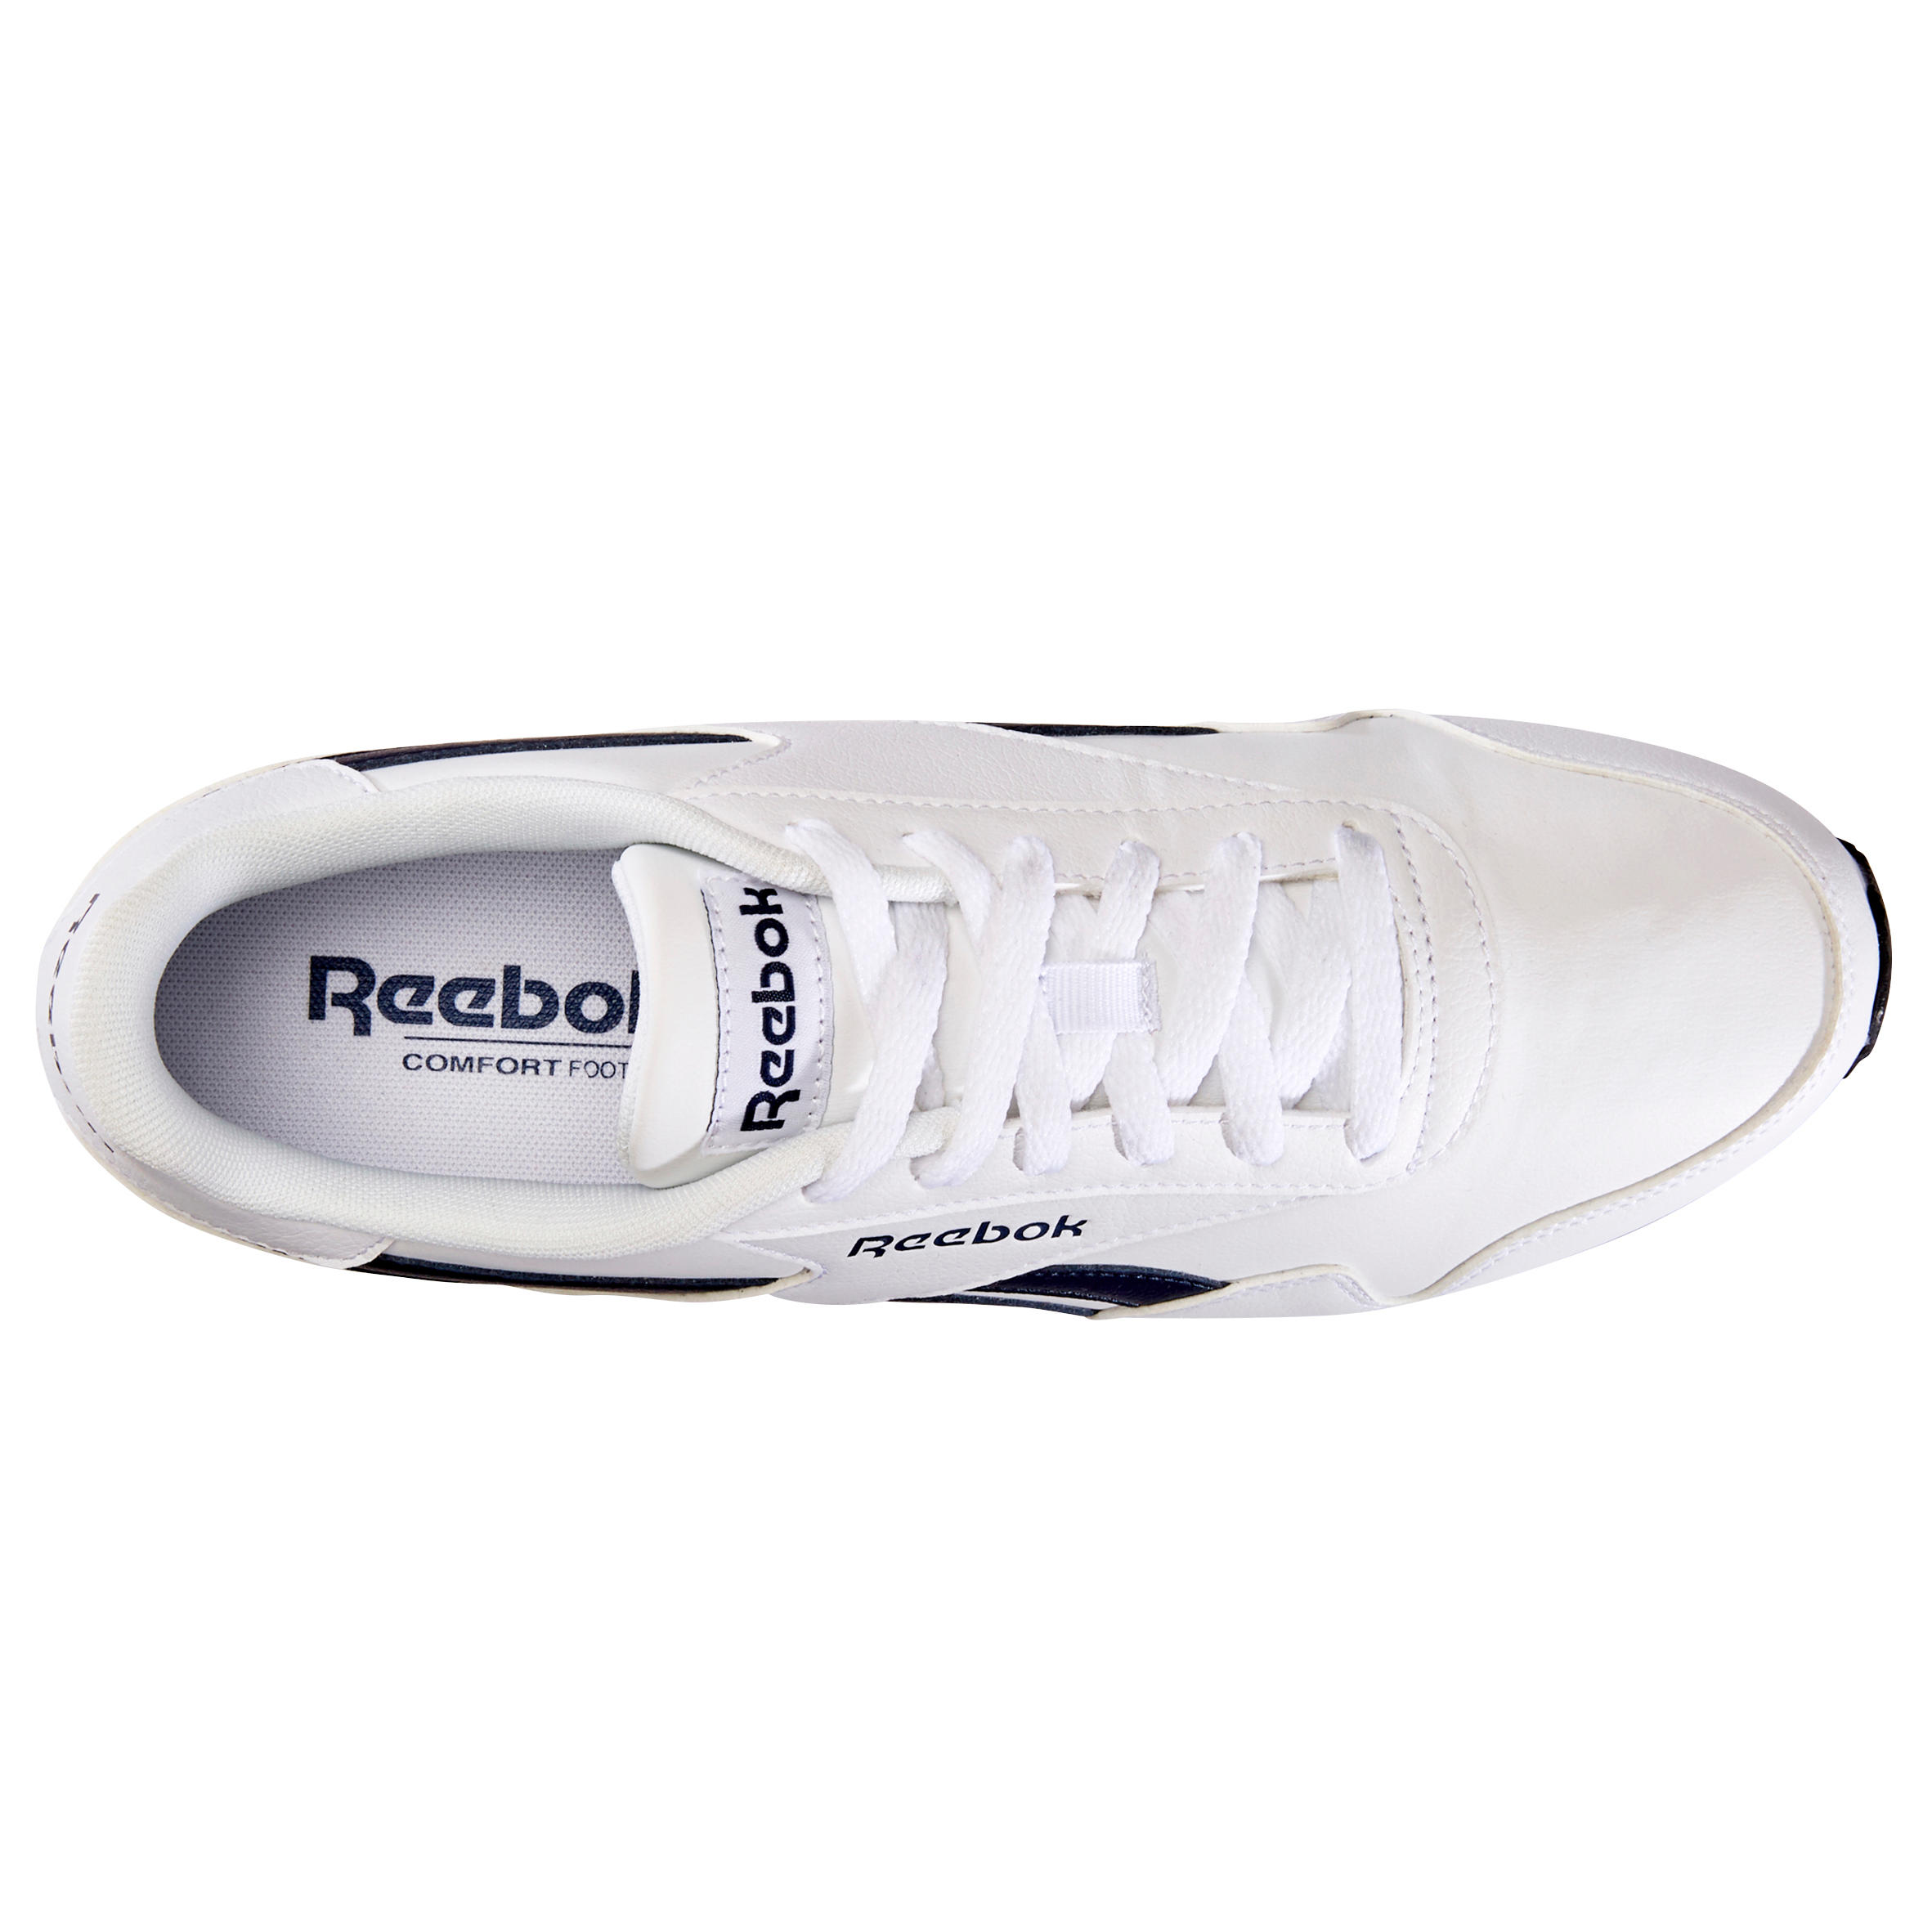 Men's Urban Walking Shoes Reebok Royal Classic - white 5/8